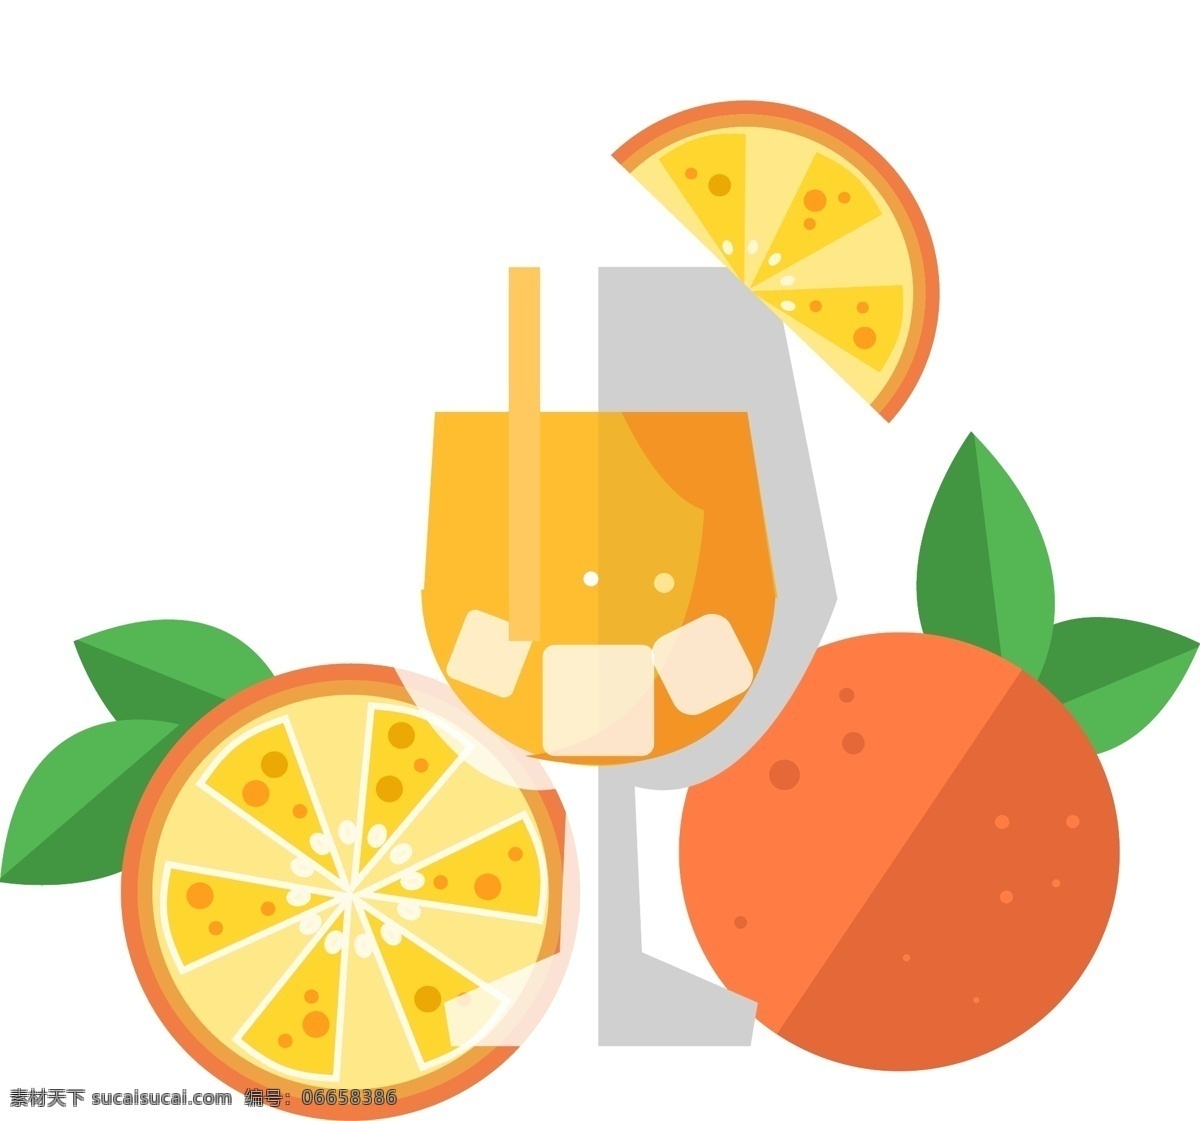 矢量 手绘 橙子 饮品 苹果 水果 西瓜 橘子 香蕉 菠萝 葡萄 西红柿 梨 草莓 柠檬 柚子 冷饮